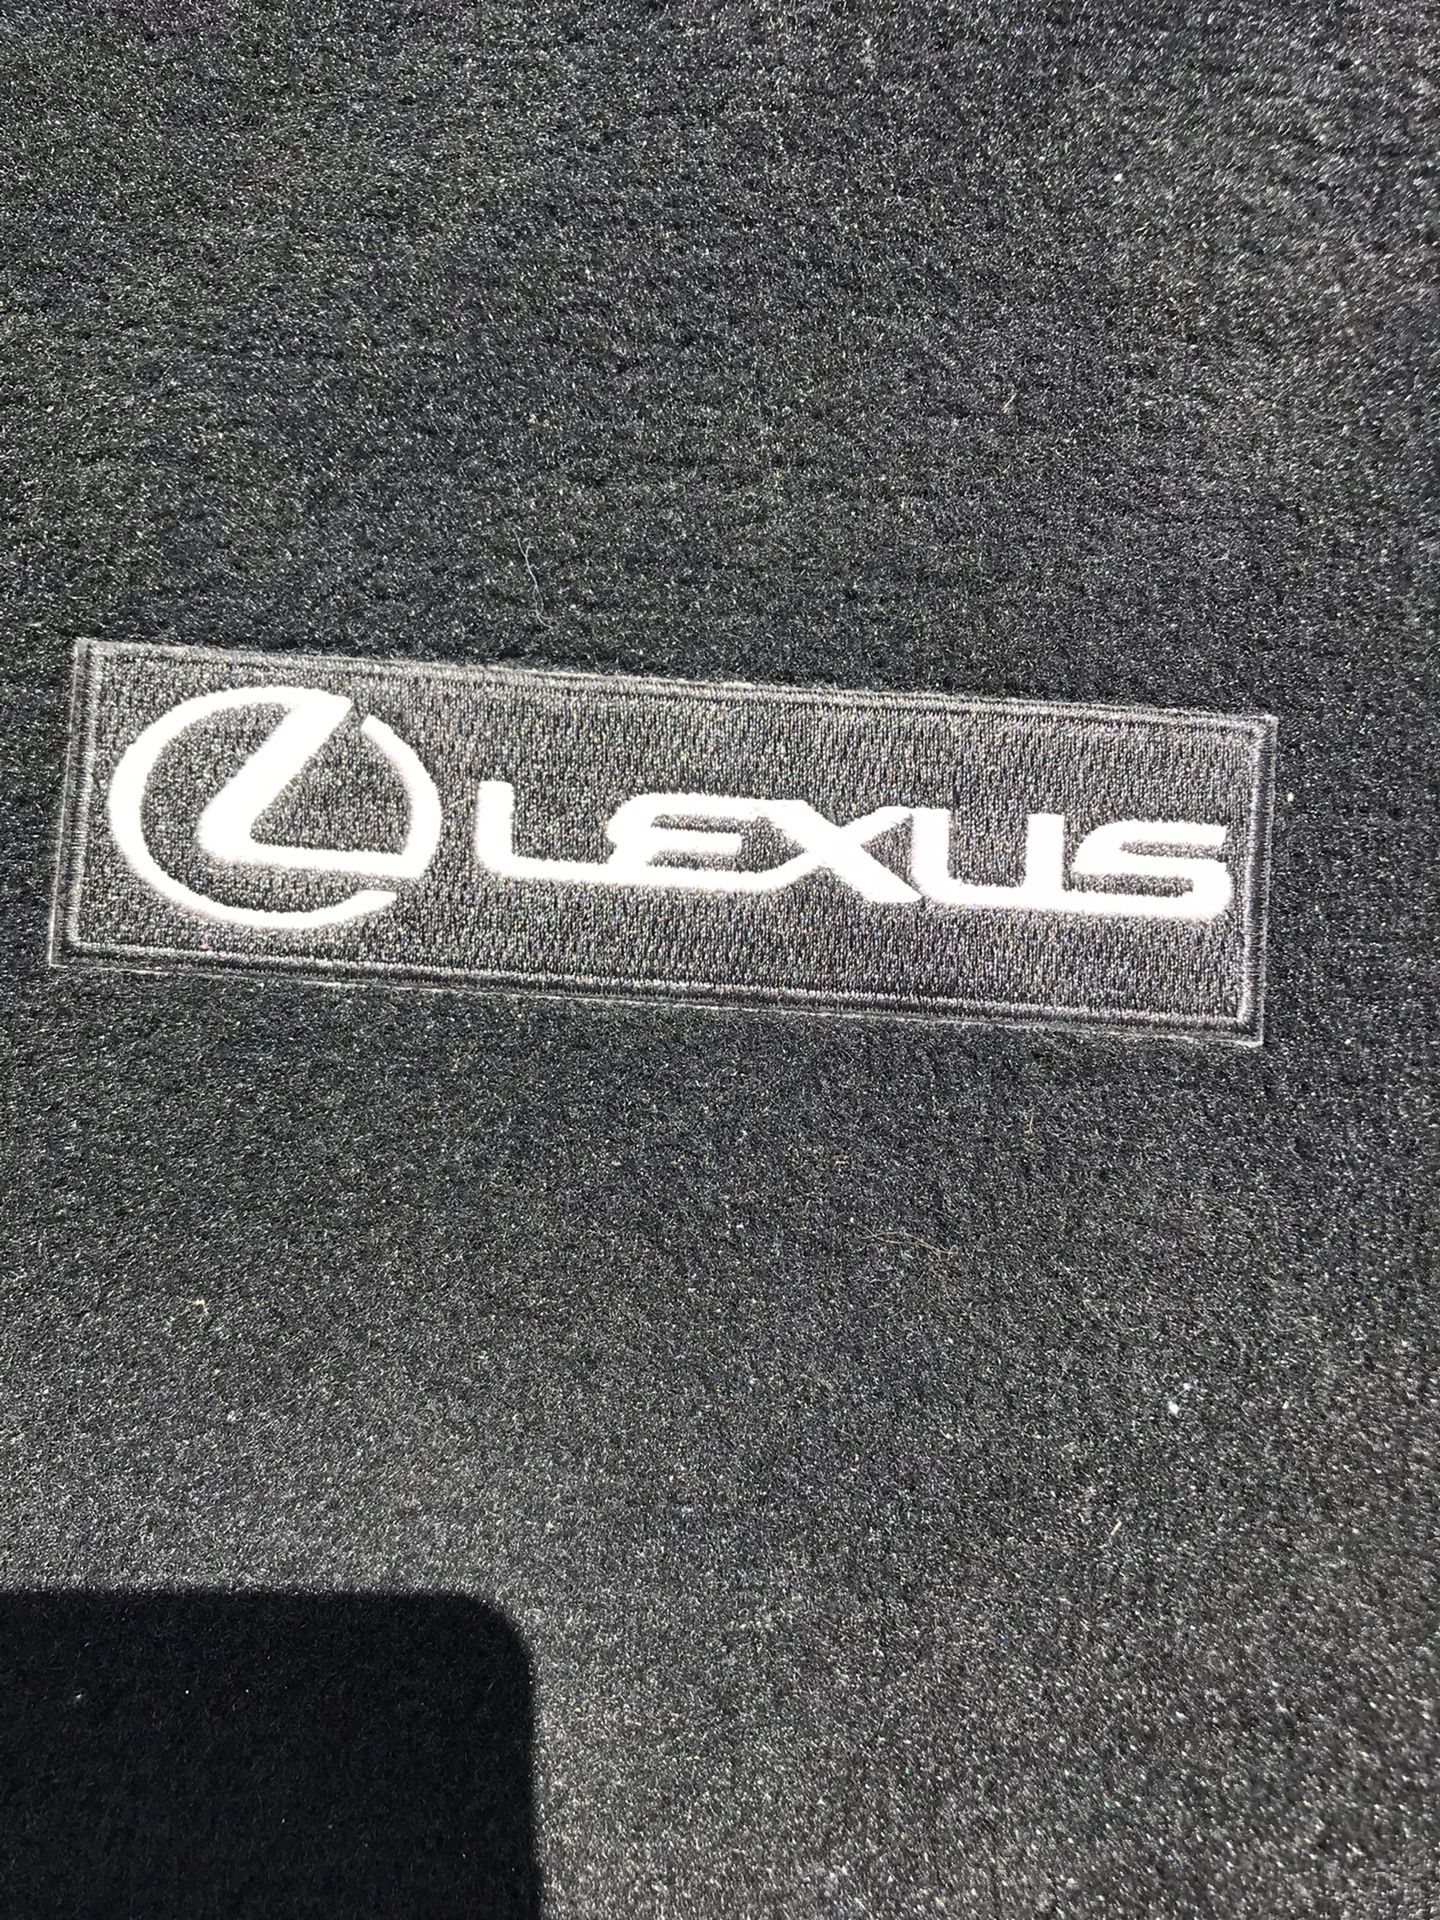 Vendo esta carpeta de trunk lexus NX